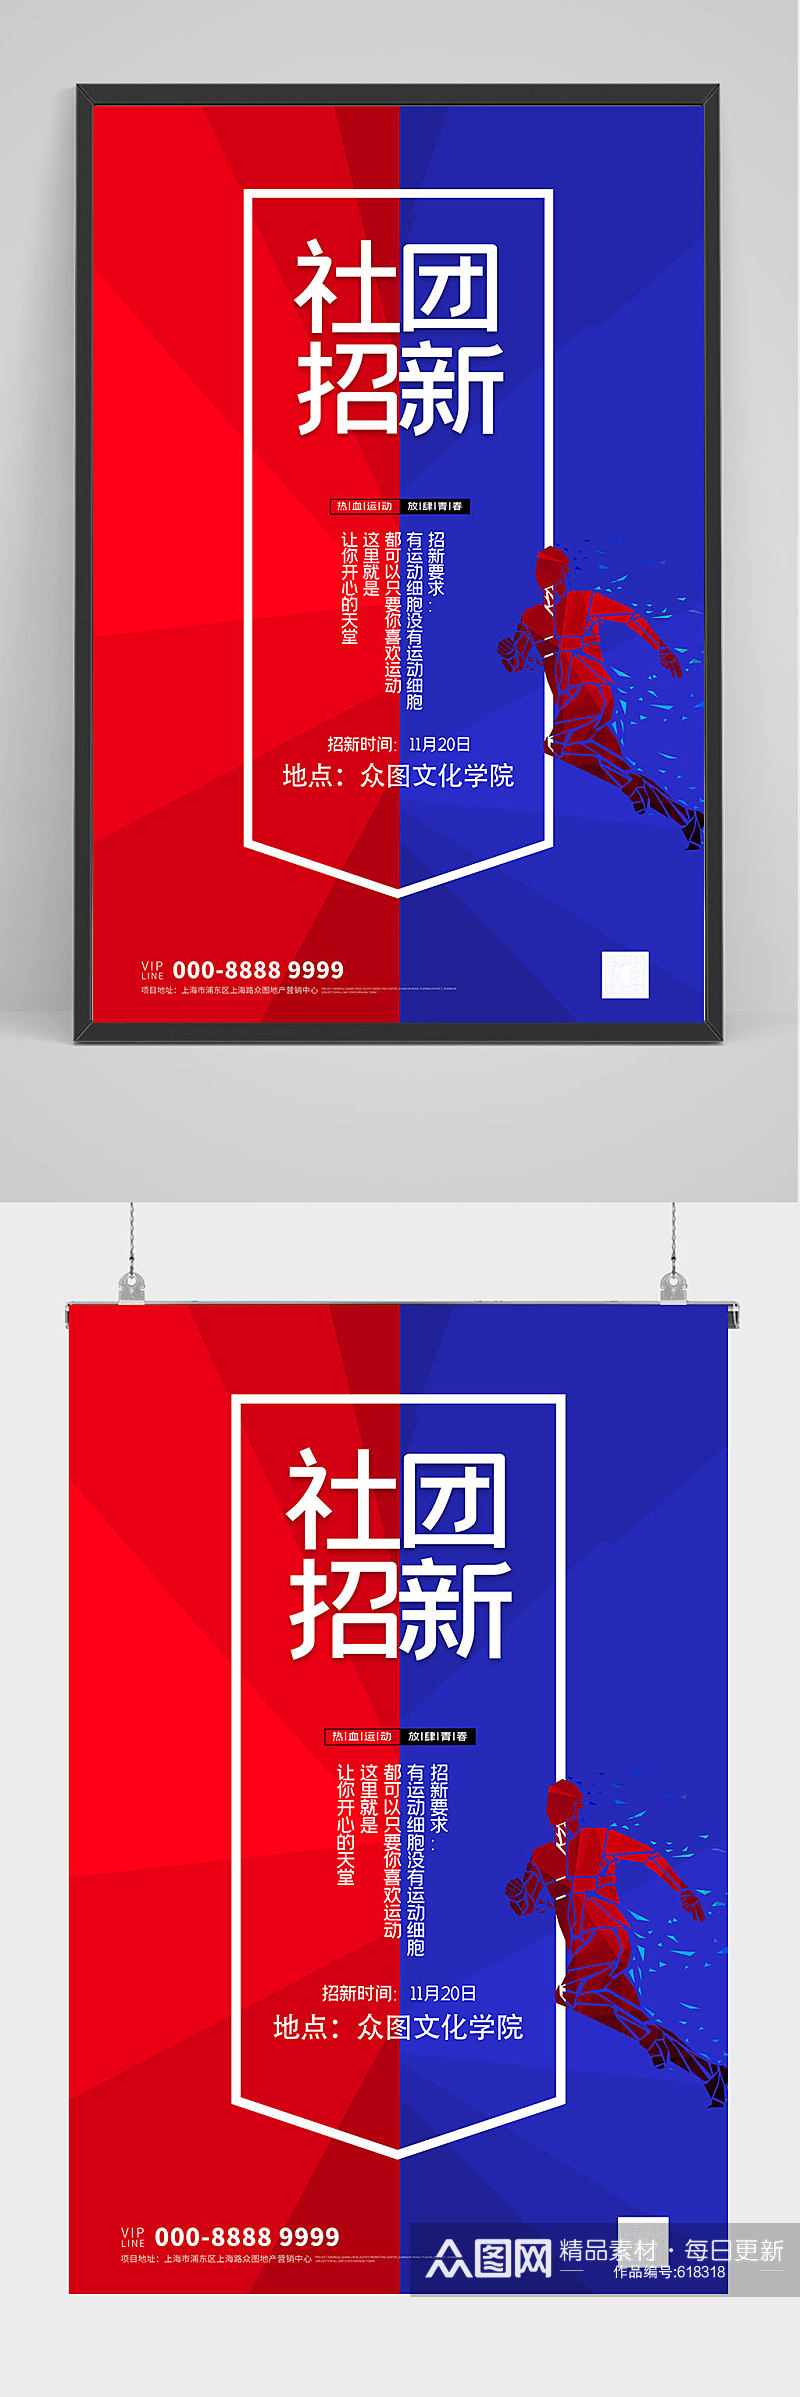 蓝红拼接社团招新海报设计素材